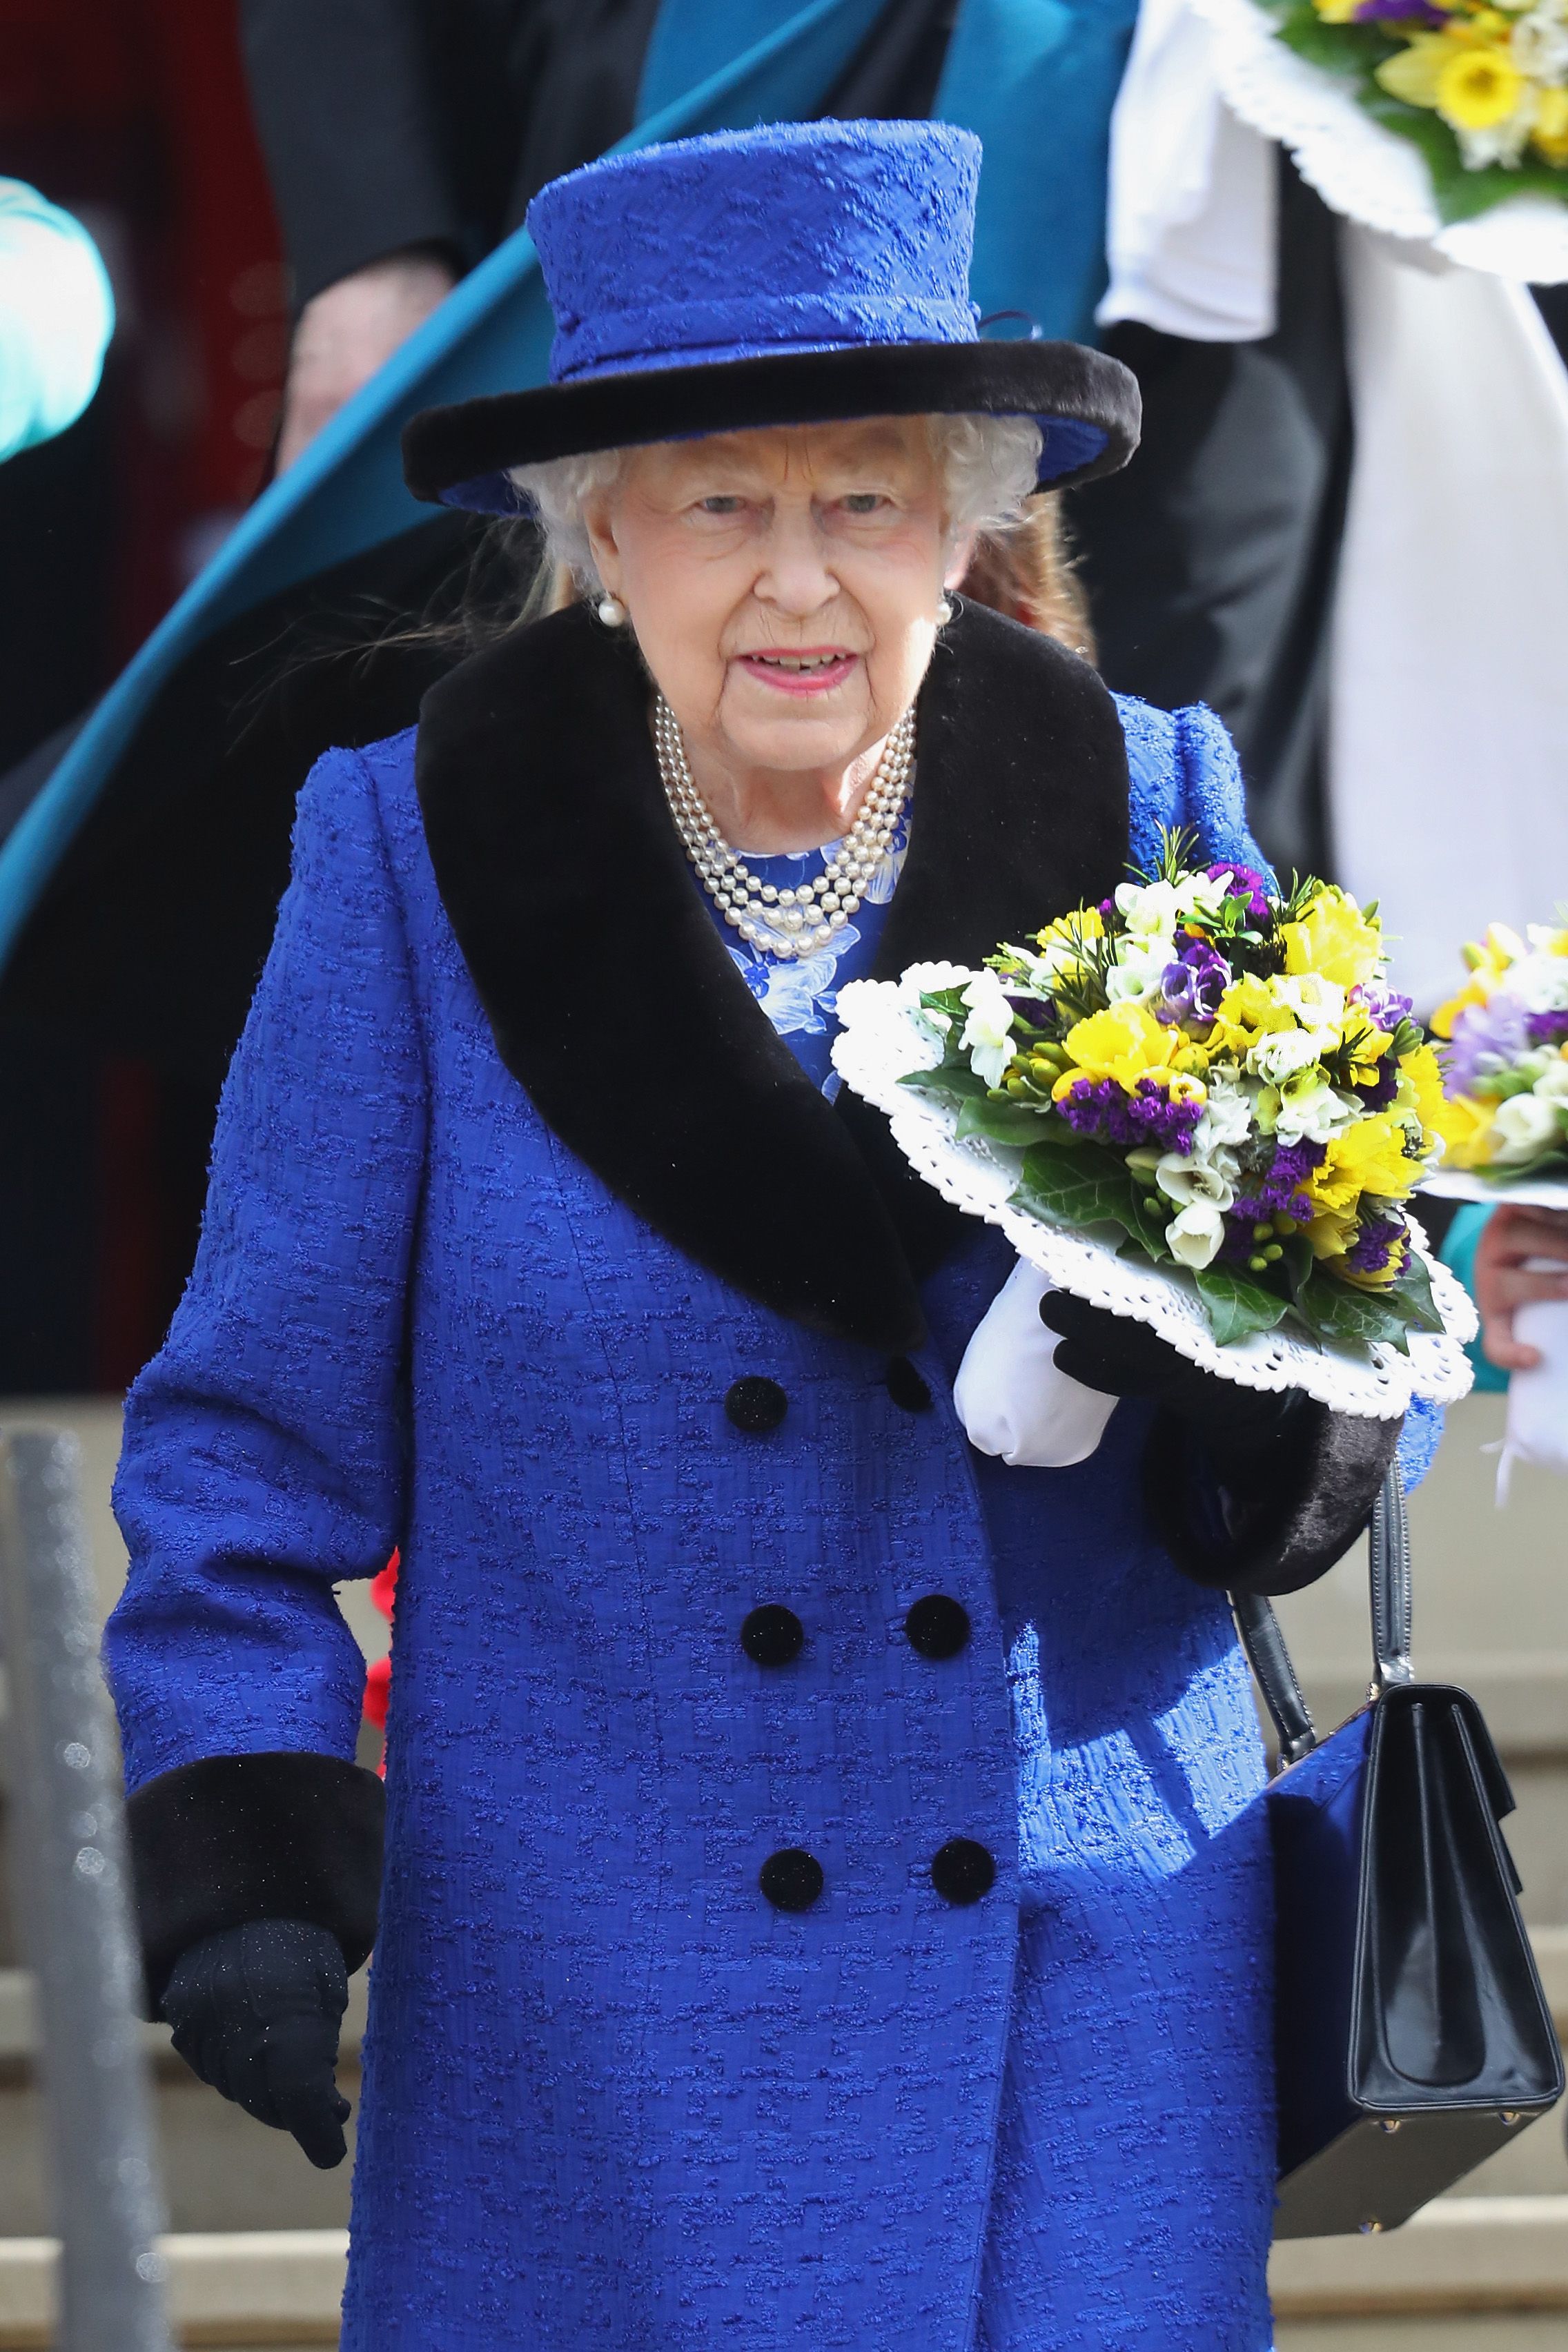 Reina Elizabeth II con ramo de flores en marzo de 2018 en Windsor, Inglaterra. | Foto: Getty Images